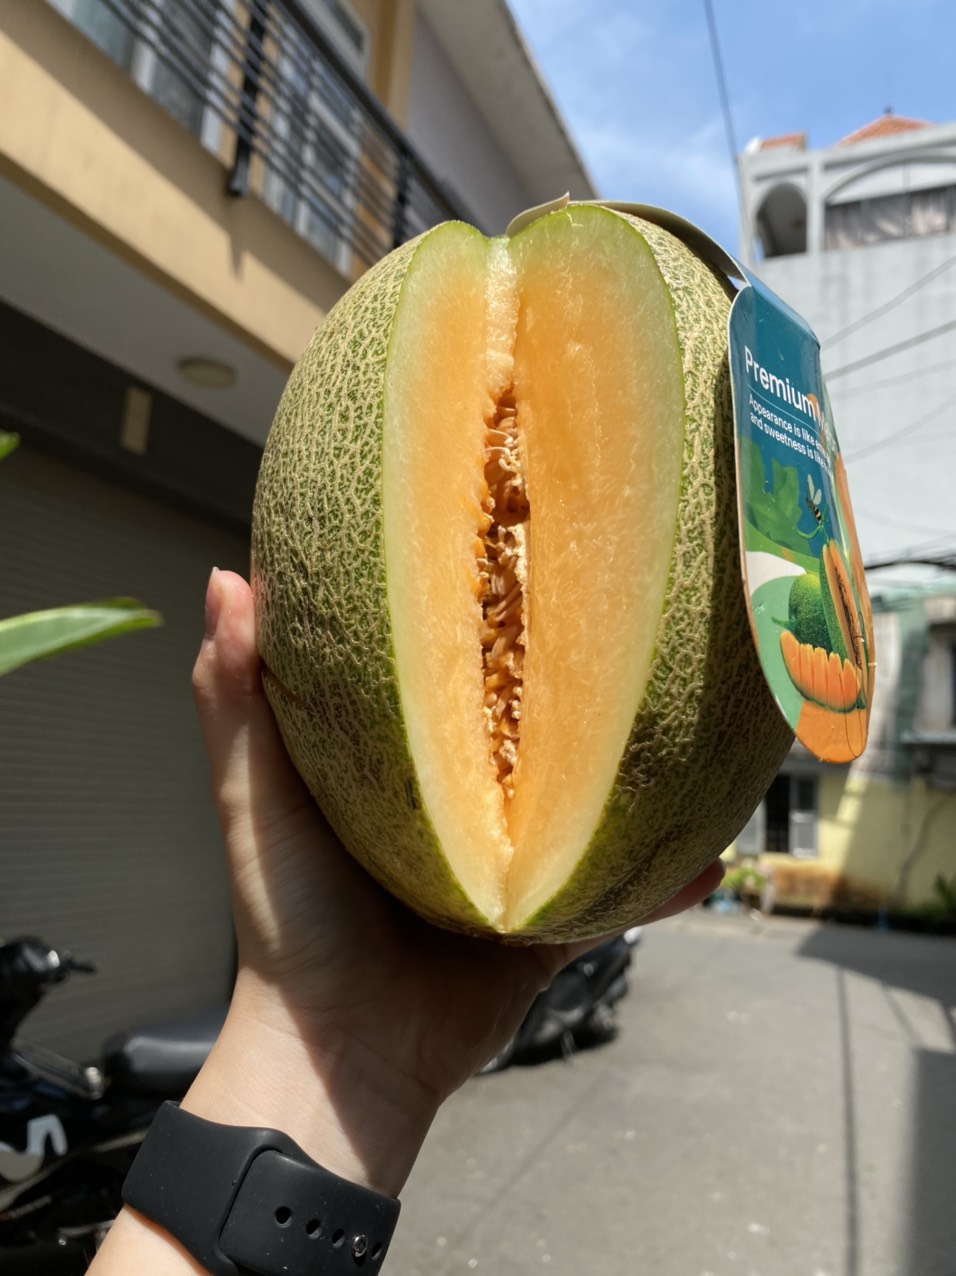 vg farm dưa lưới premium melon trái dài ruột cam (1,5kg - 1,7kg) giòn, ngọt thanh 2